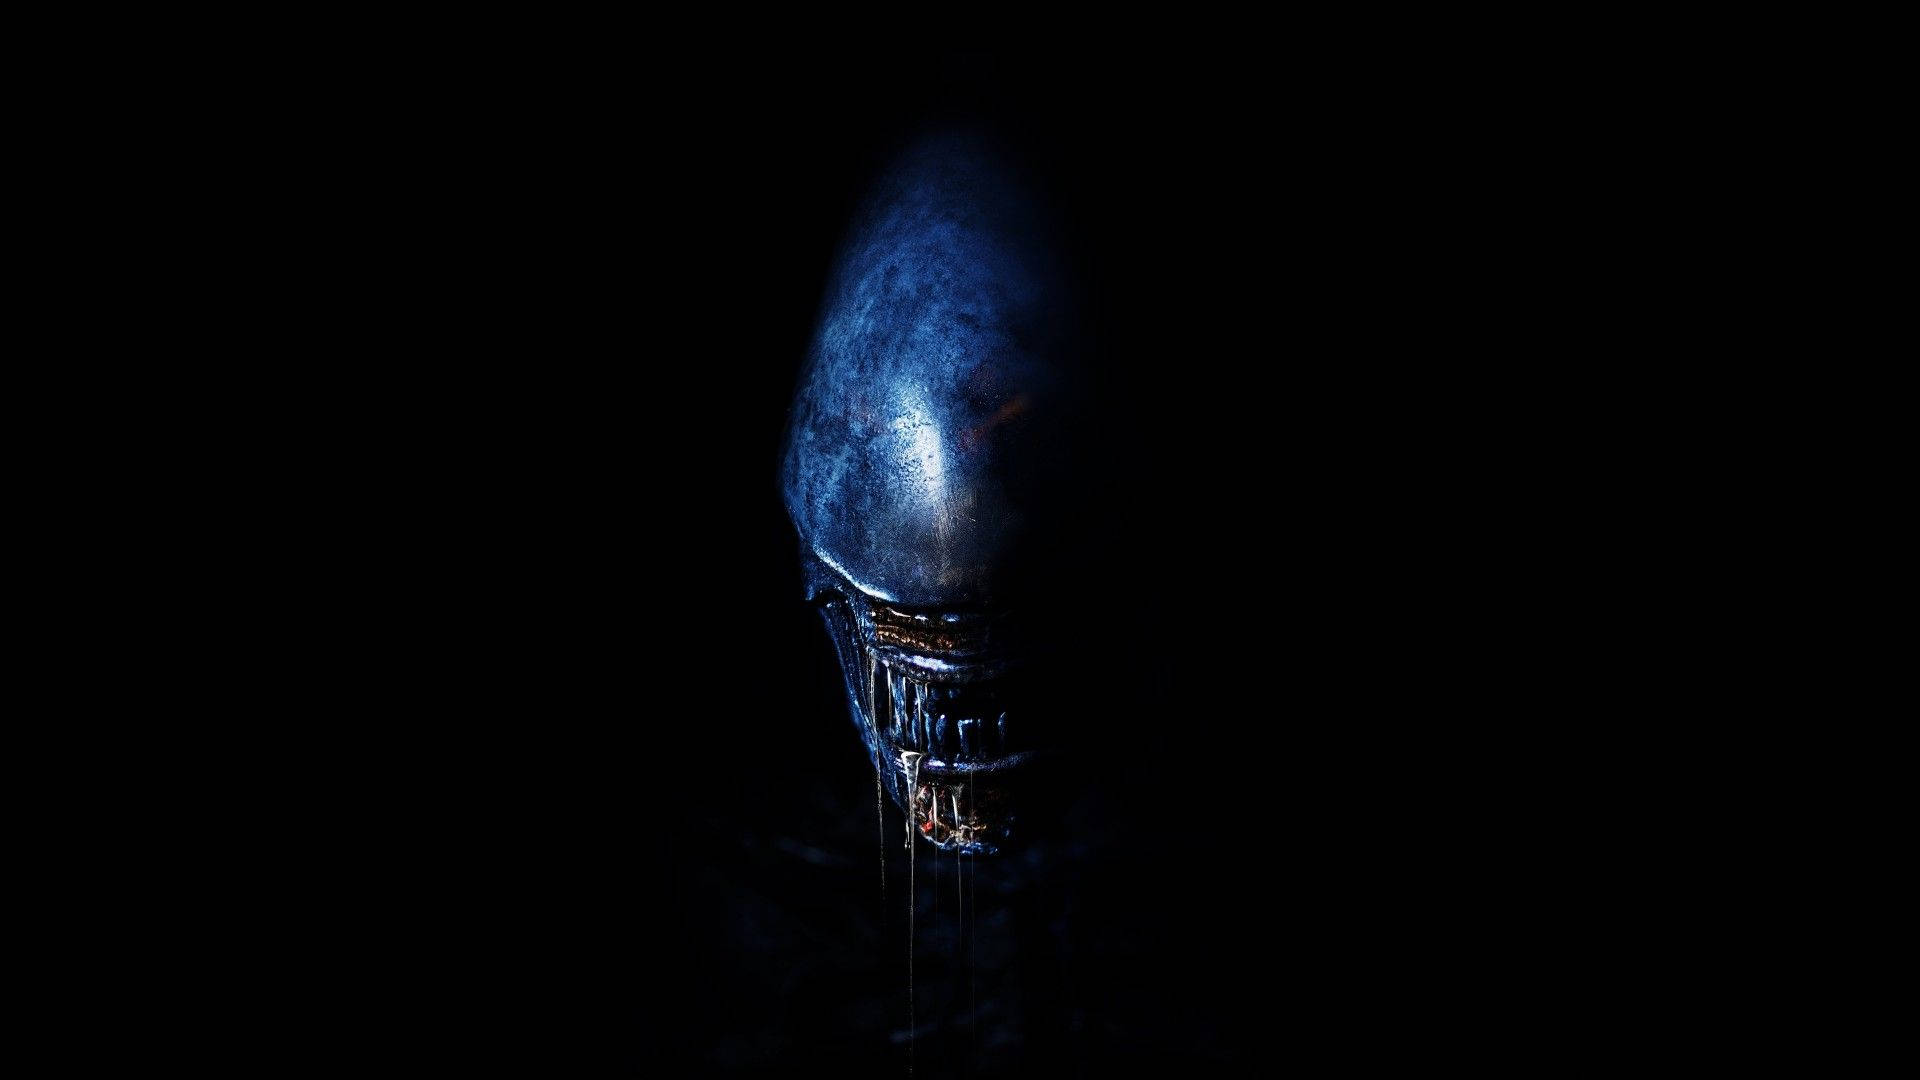 Dark Alien Movie Background